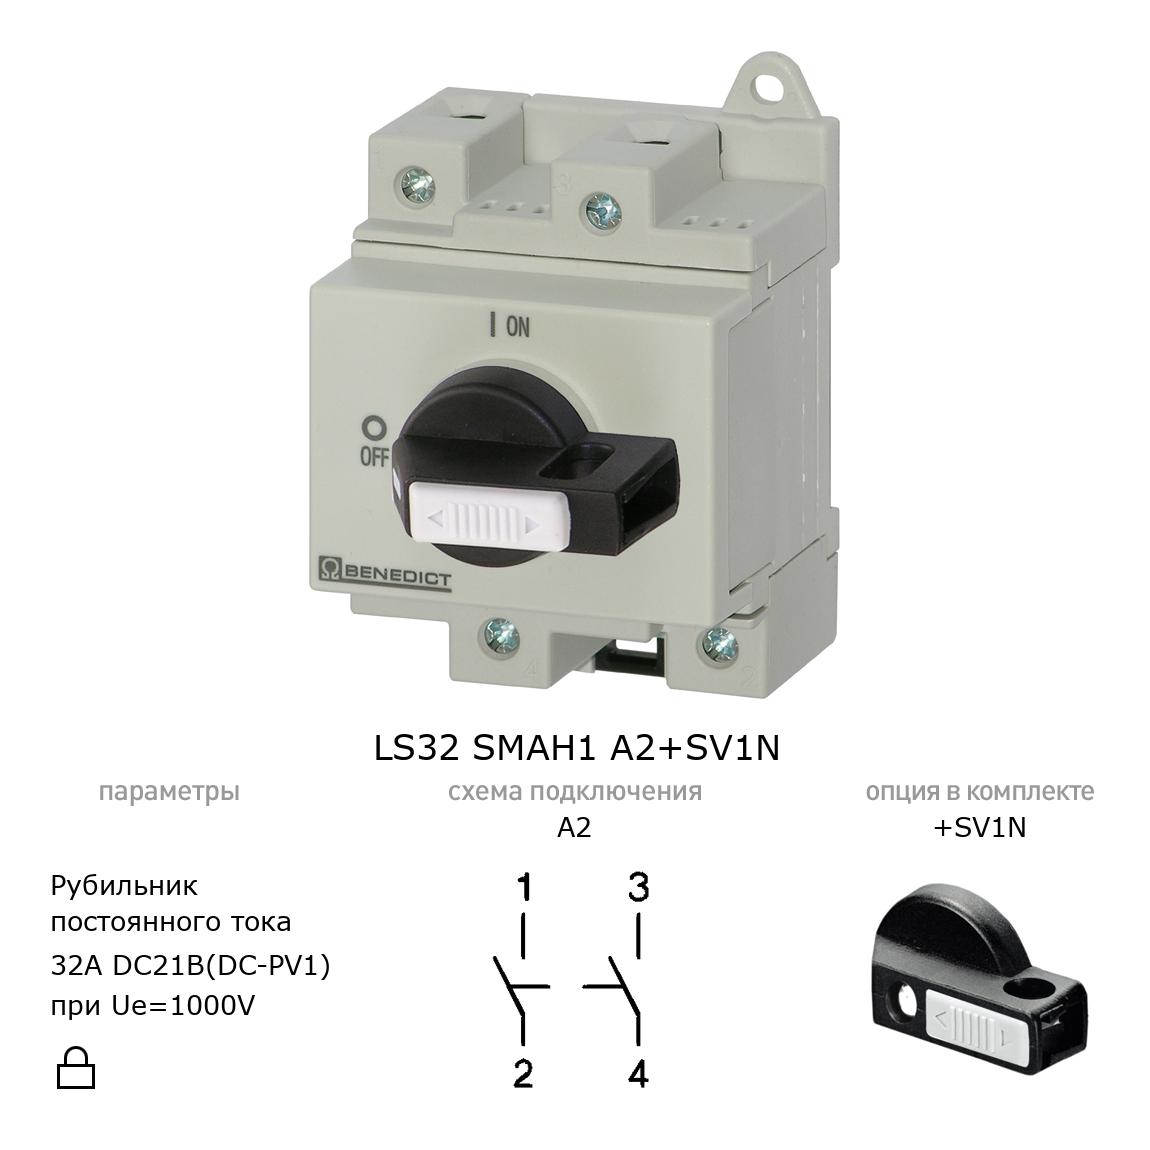 Выключатель нагрузки / рубильник для постоянного тока (DC) LS32 SMAH1 A2+SV1N BENEDICT